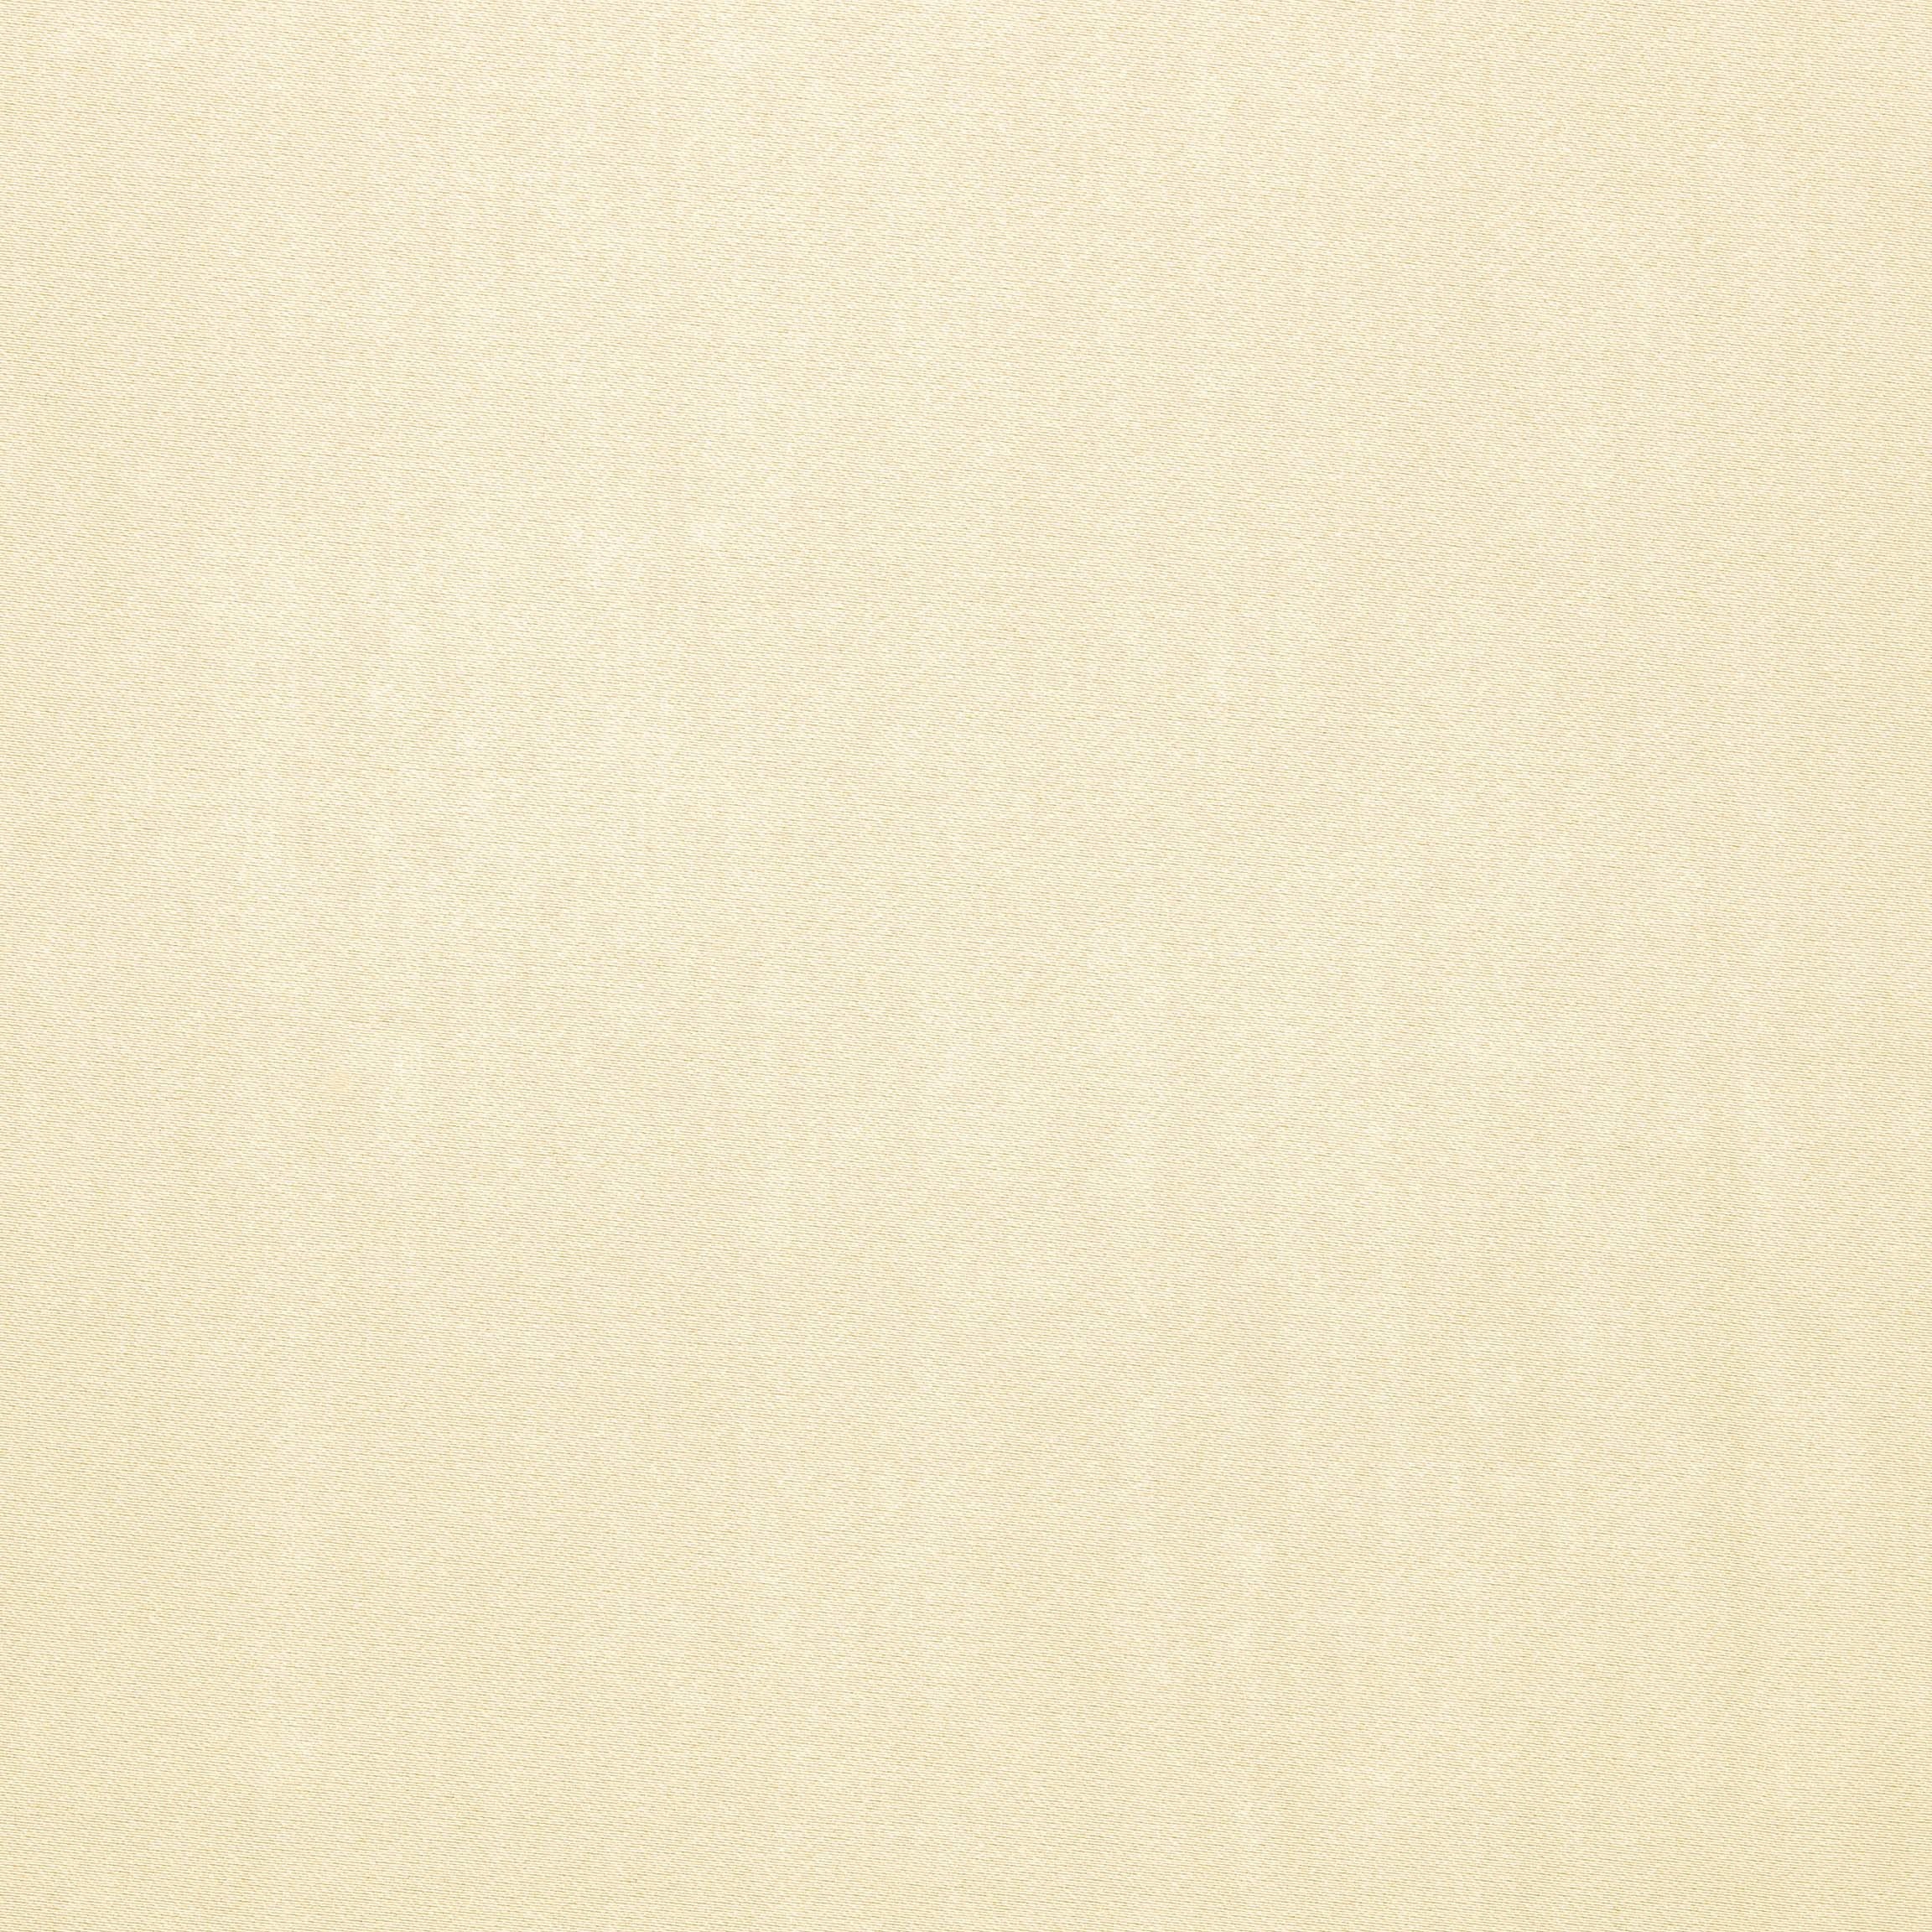  Портьерная ткань MONTREAL IVORY, ширина 280 см  - Фото